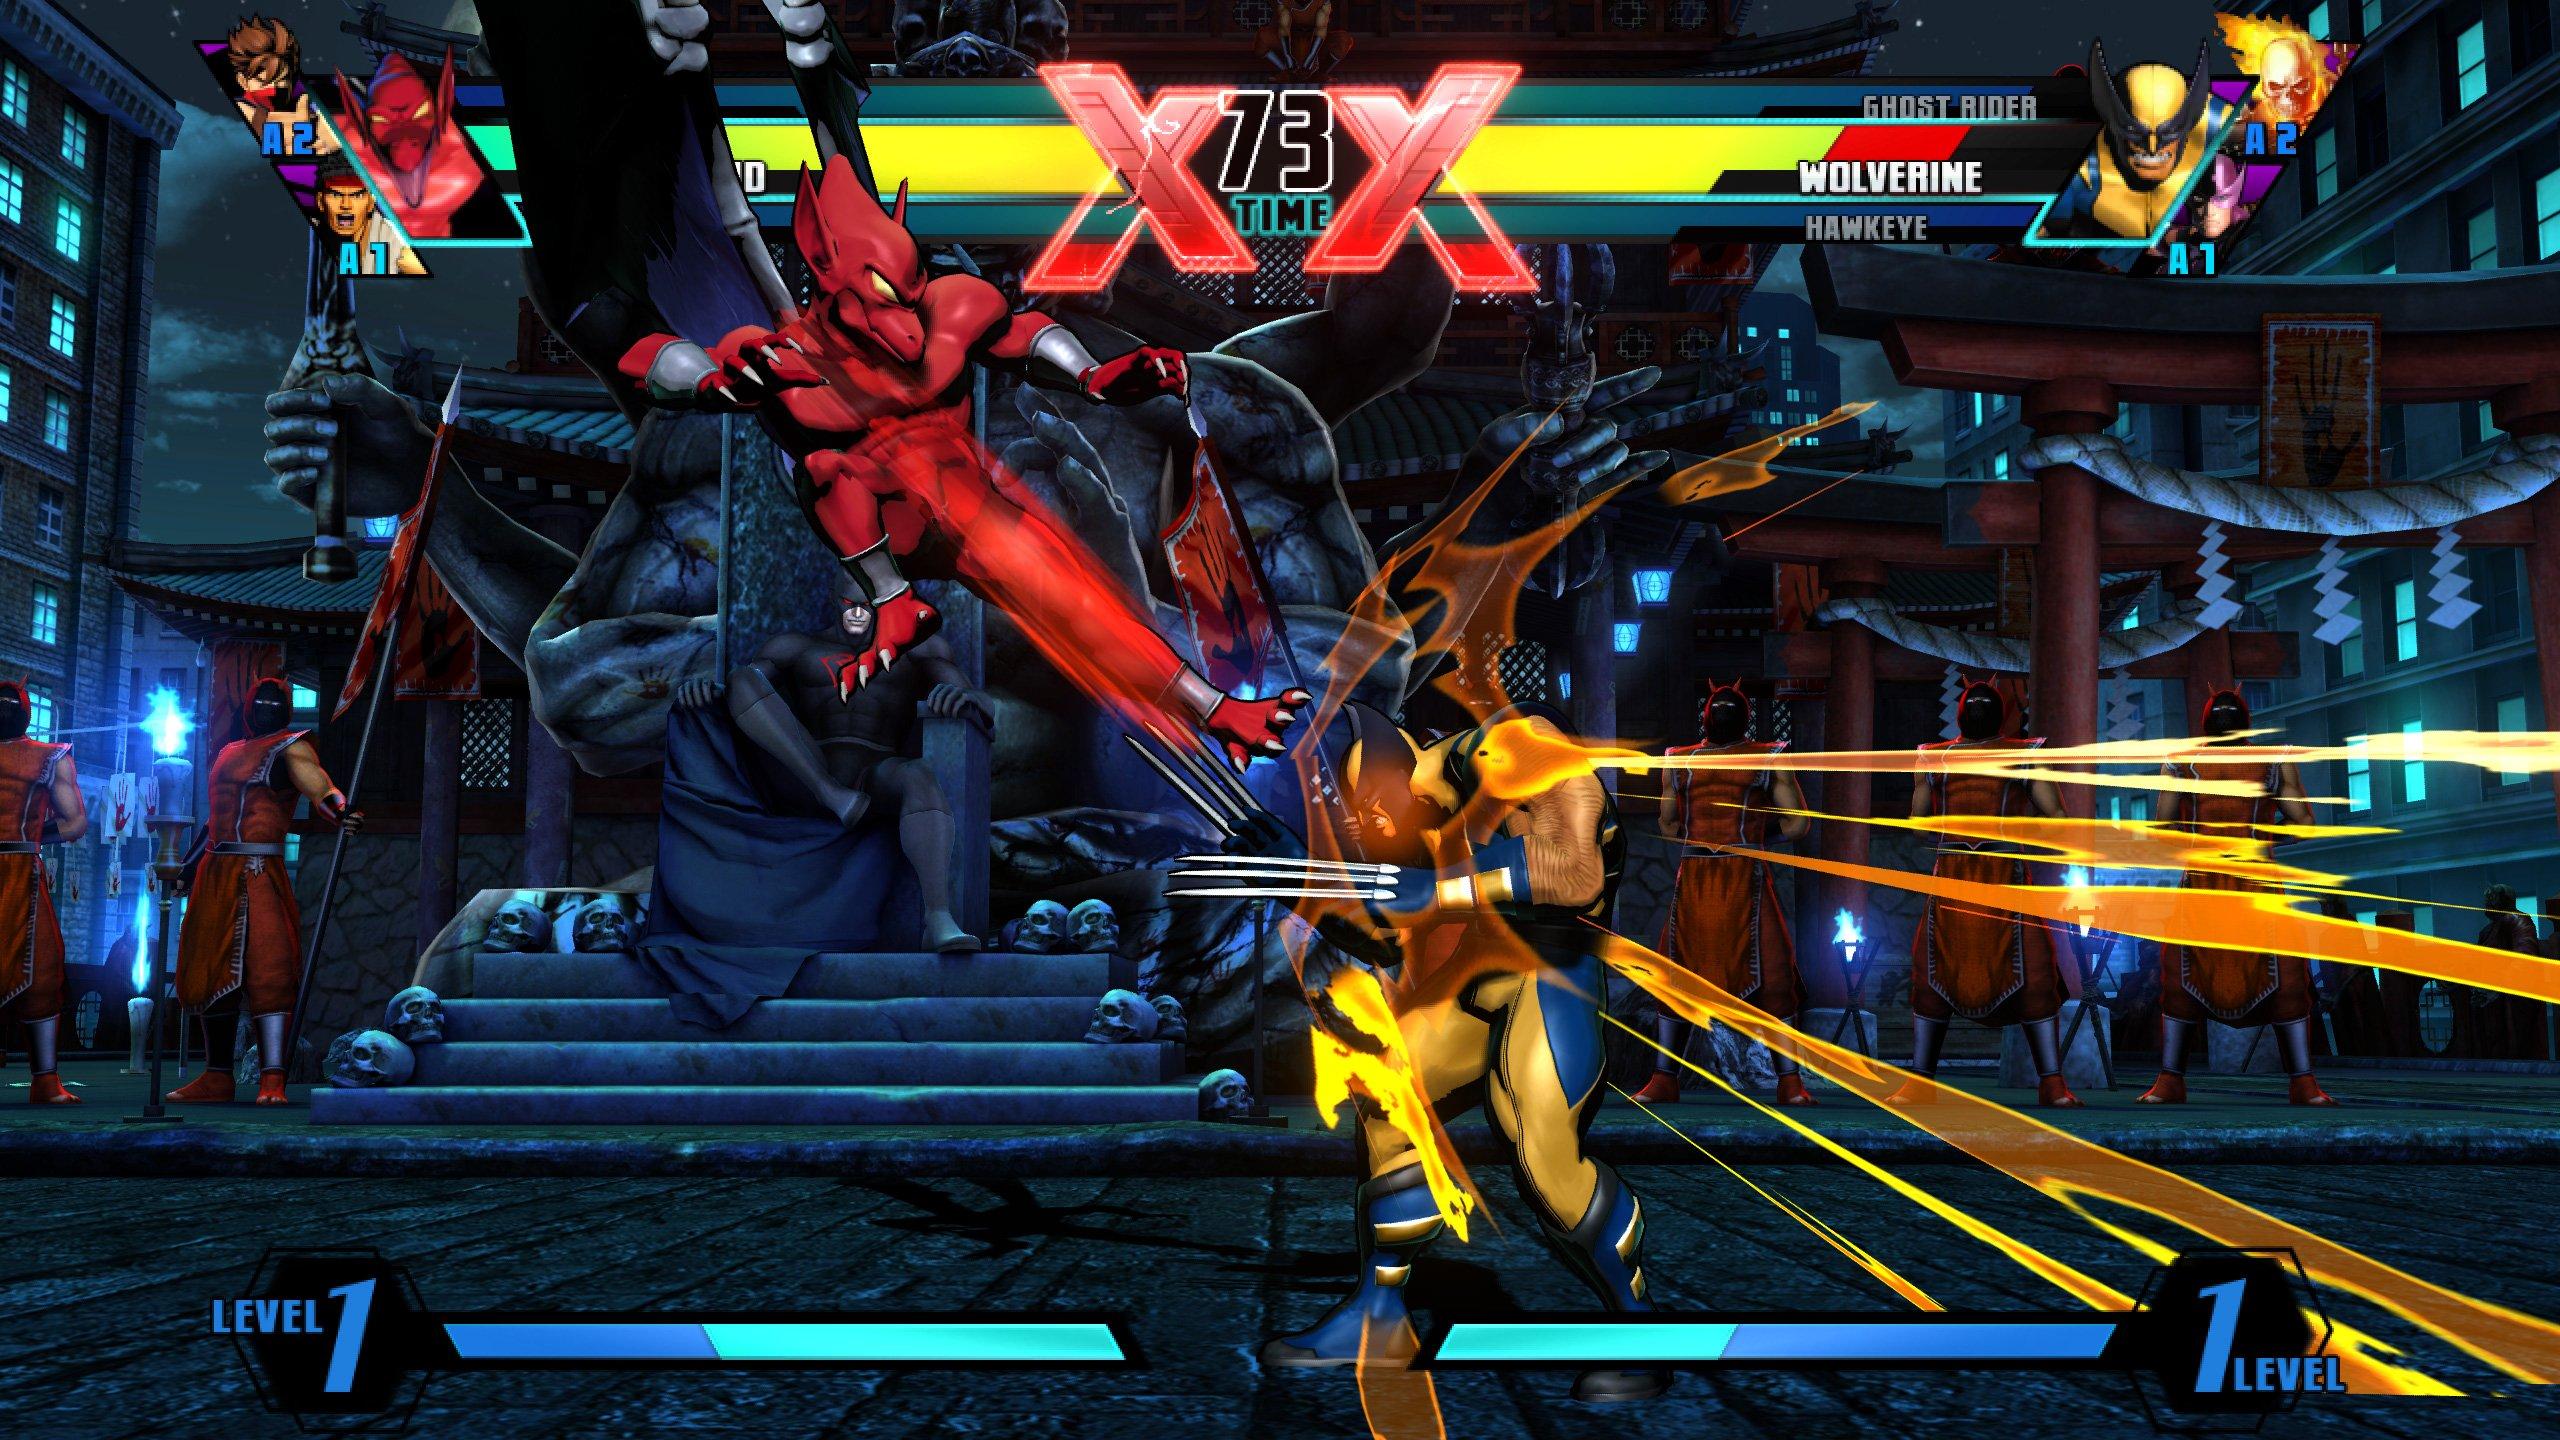 Ultimate Marvel vs. Capcom 3 - Xbox 360